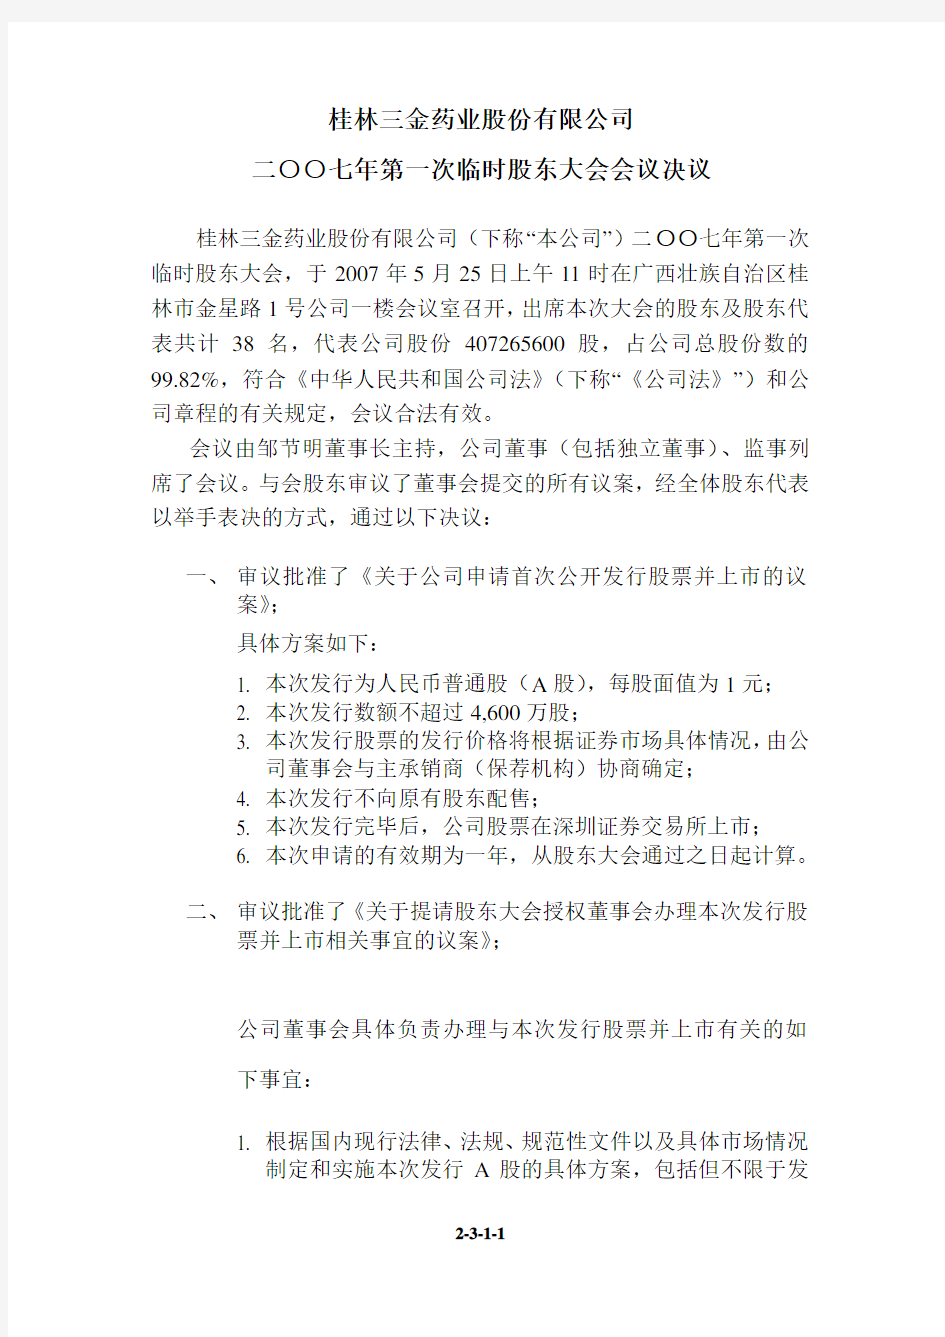 桂林三金药业股份有限公司二○○七年第一次临时股东大会会议决议